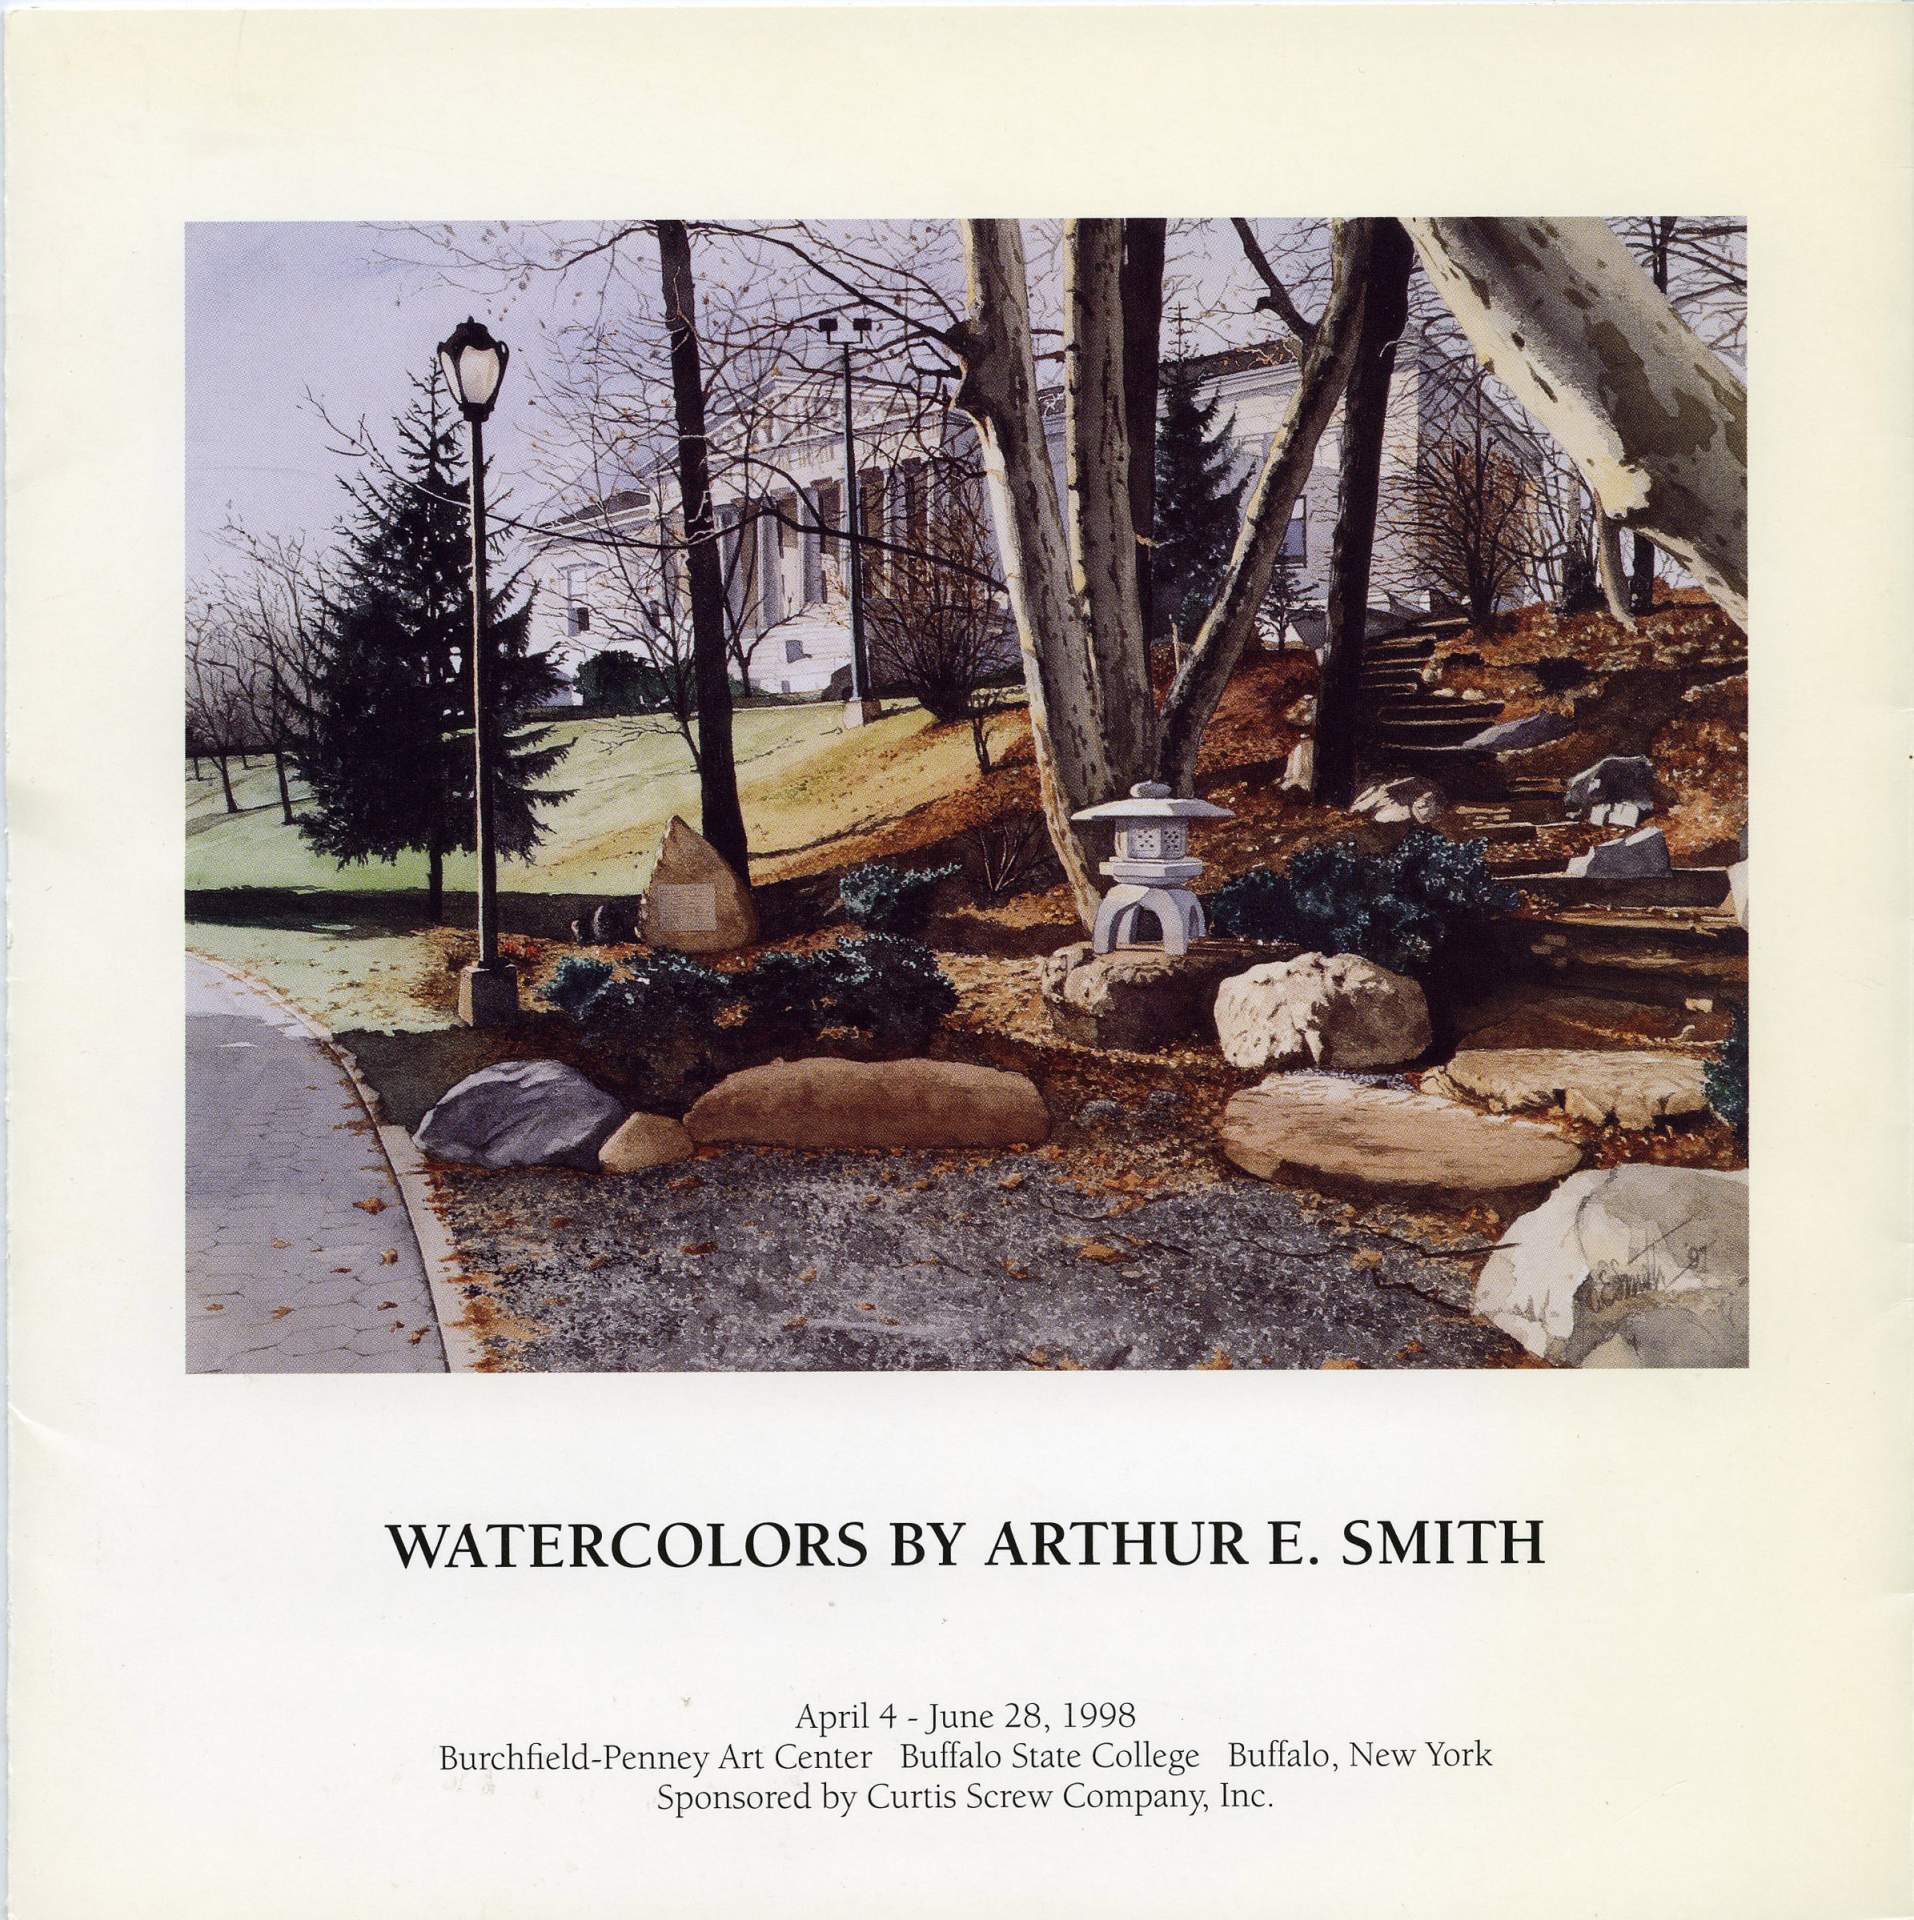 Watercolors by Arthur E. Smith